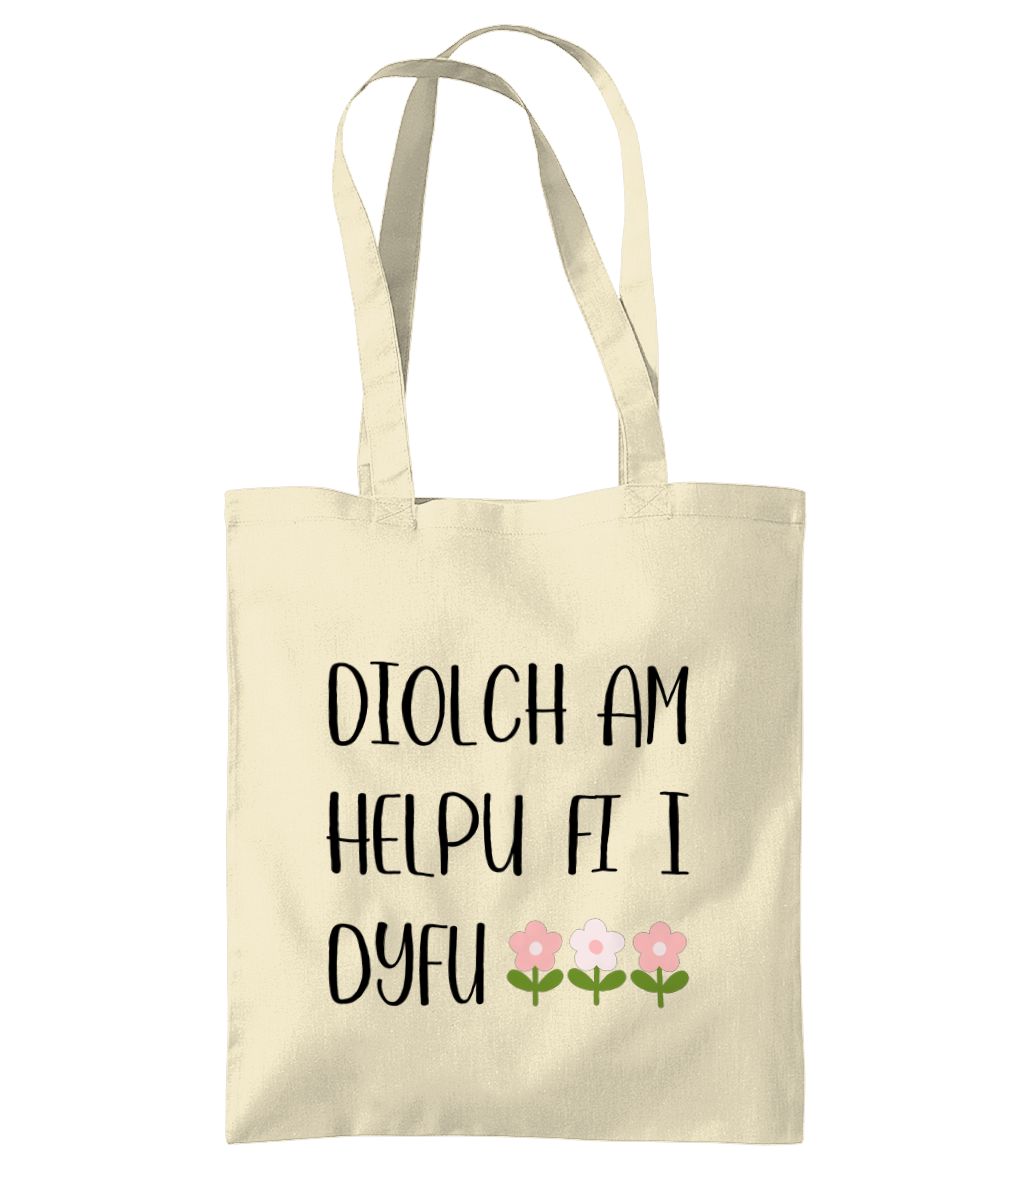 'Diolch am helpu fi i dyfu' (blodau) Printed Tote Bag